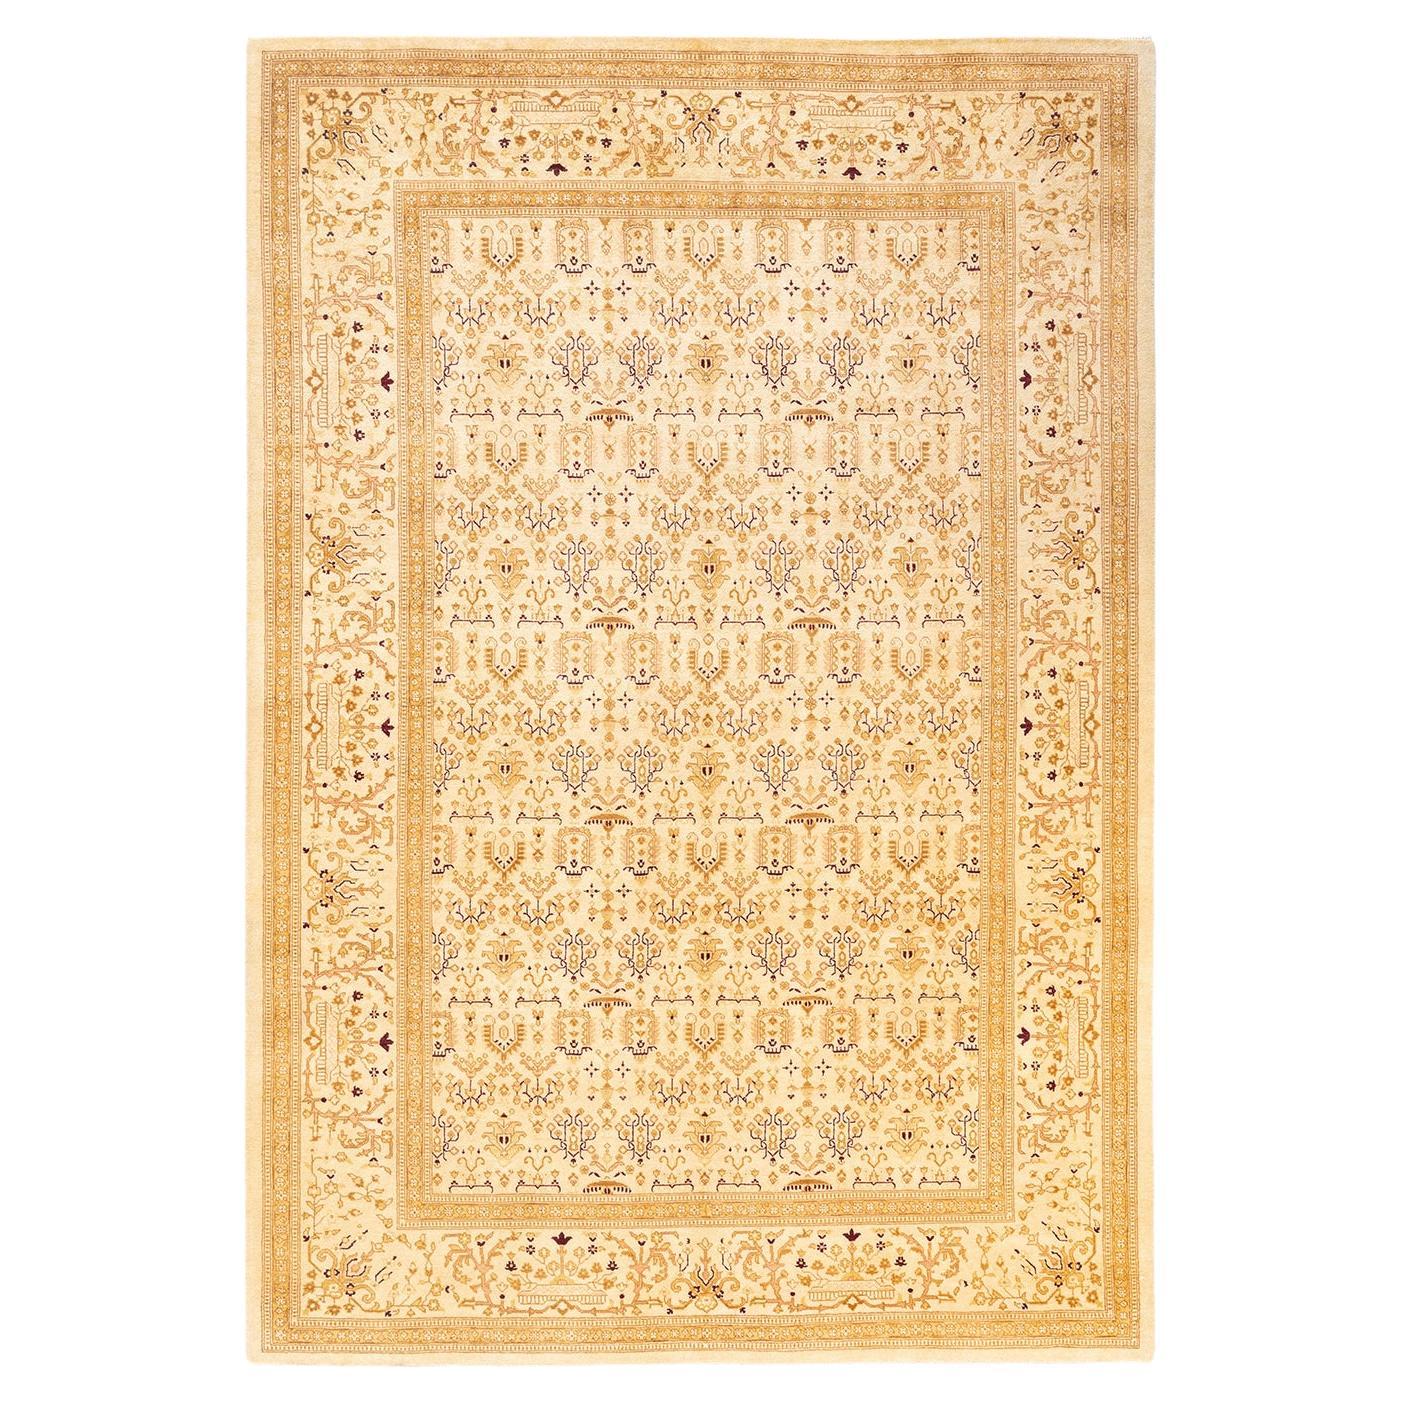 Handgeknüpfter orientalischer Mogul Elfenbeinfarbener Teppich, Unikat